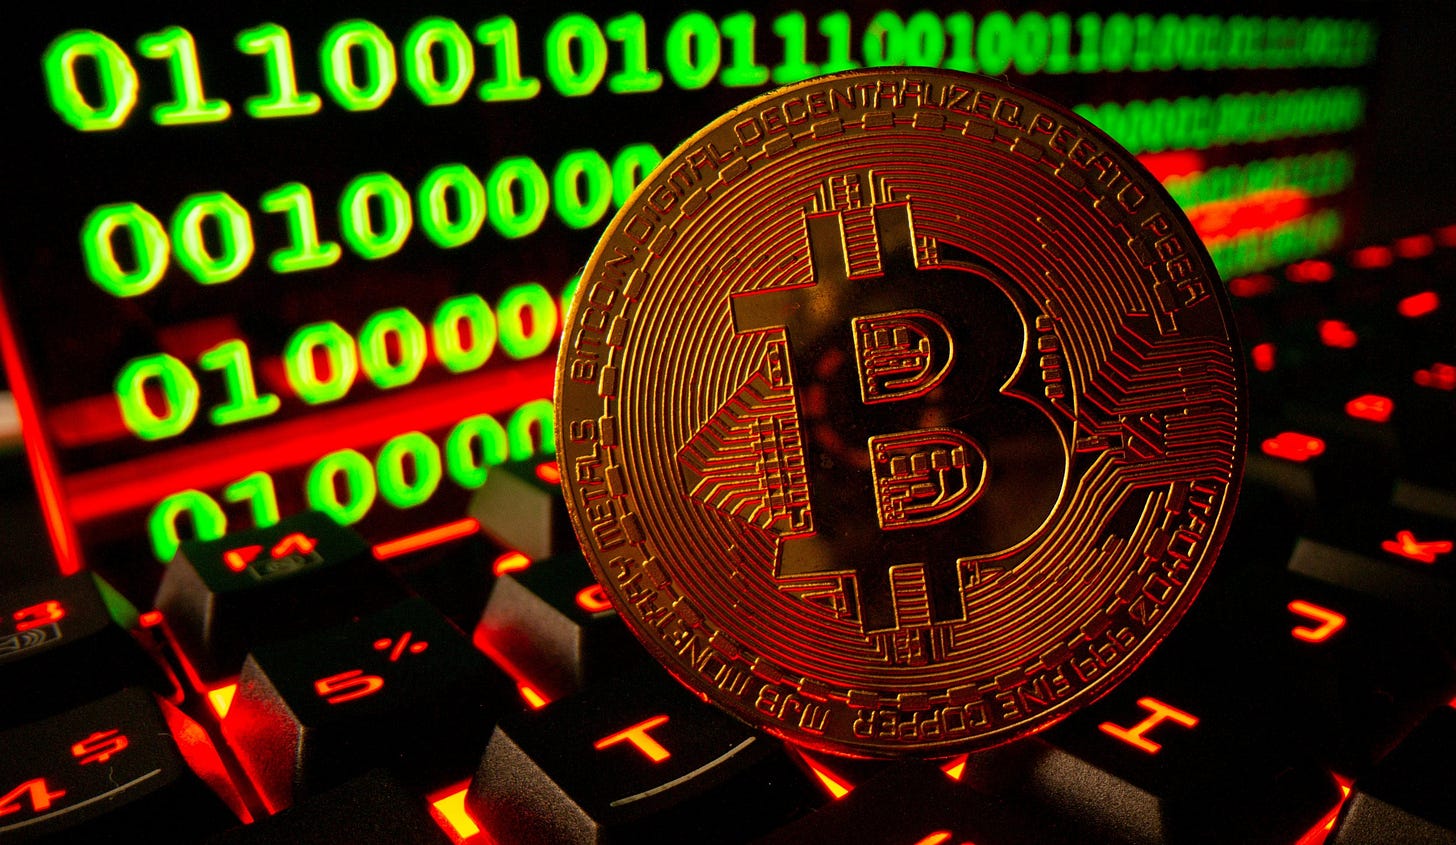 Mi határozza meg a Bitcoin árát? | Cryptofalka